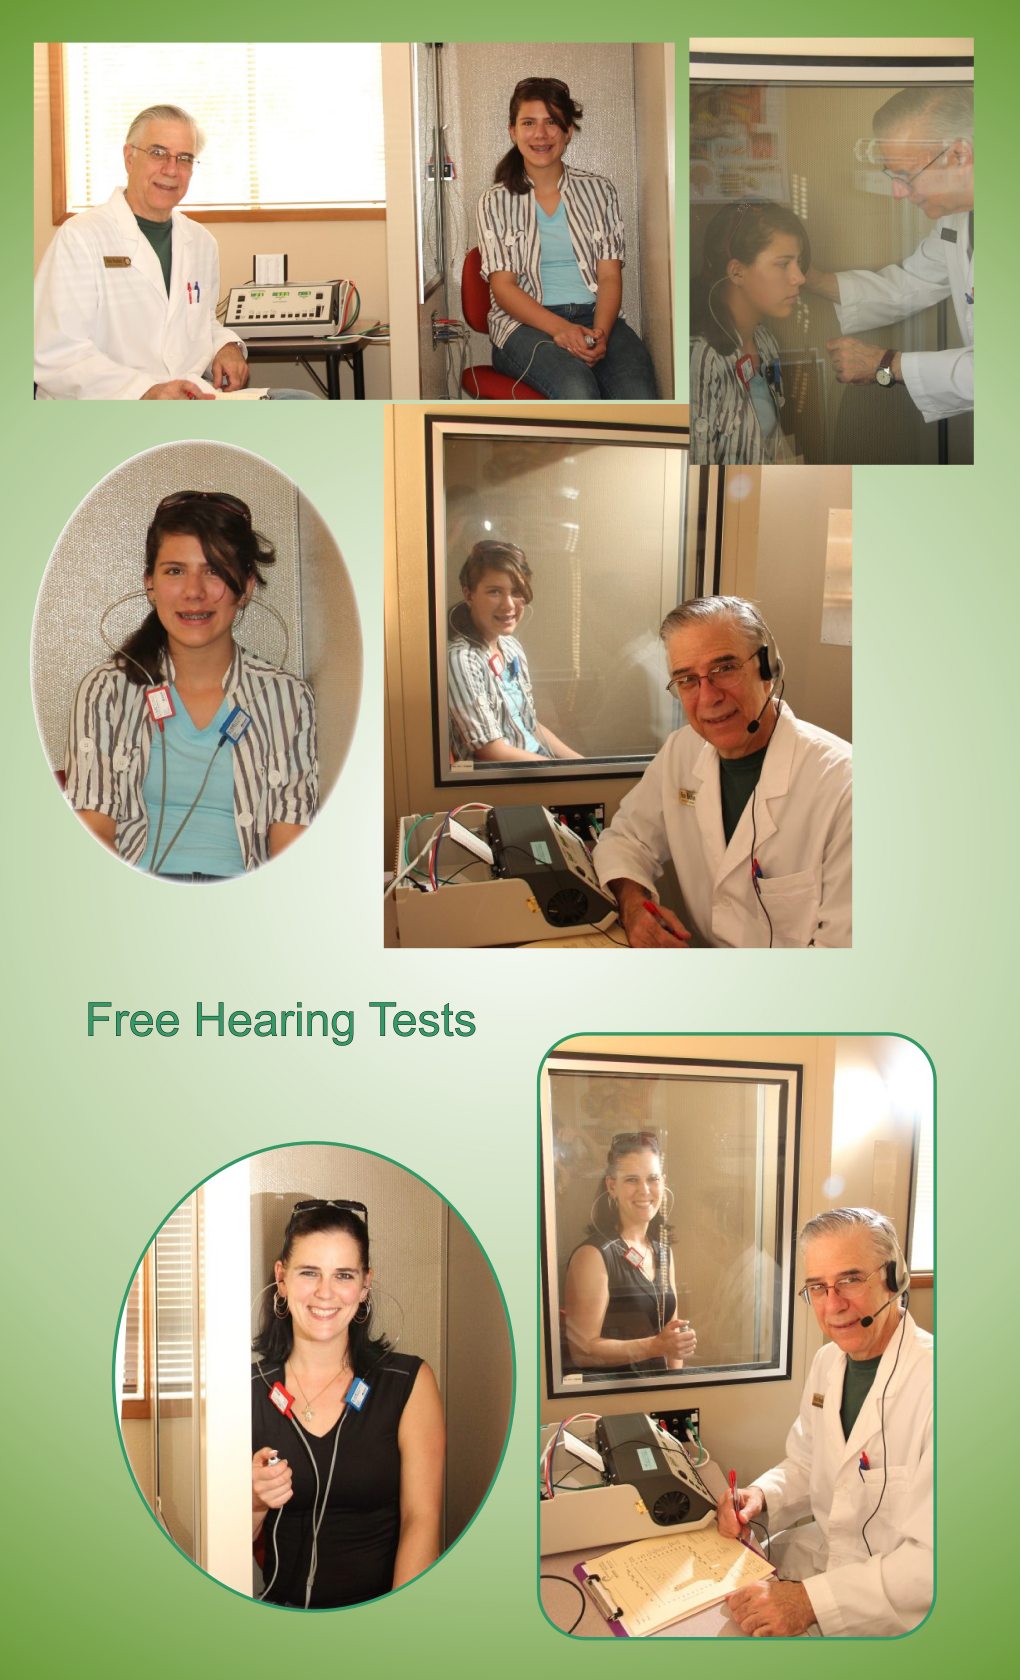 reedsport florence oregon hearing aids free hearing test